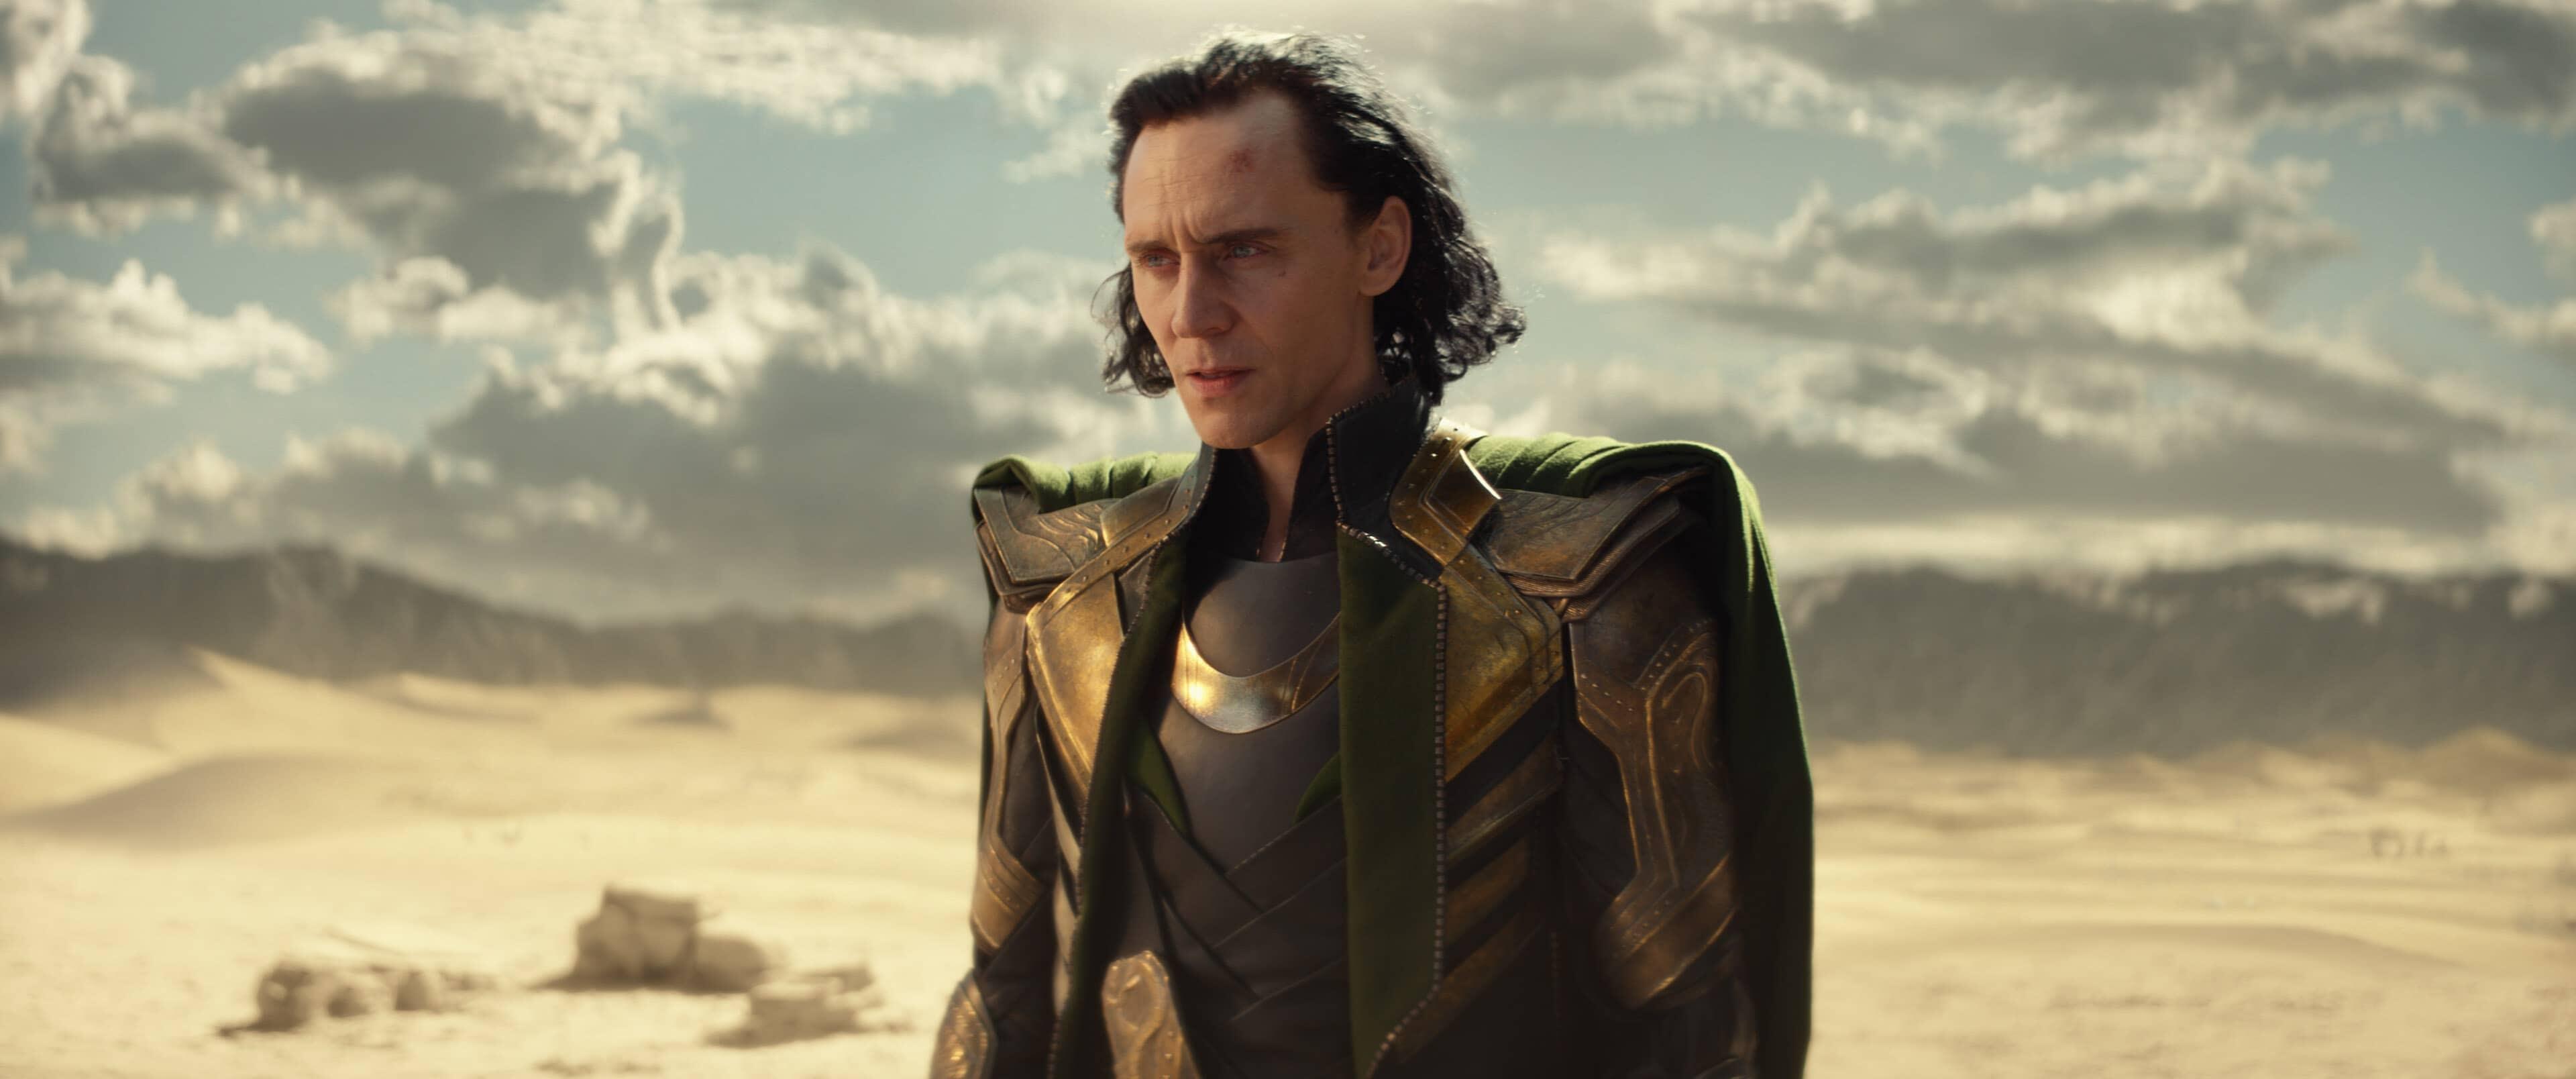 Loki: Glorious Purpose | Season 1 | Episode 1